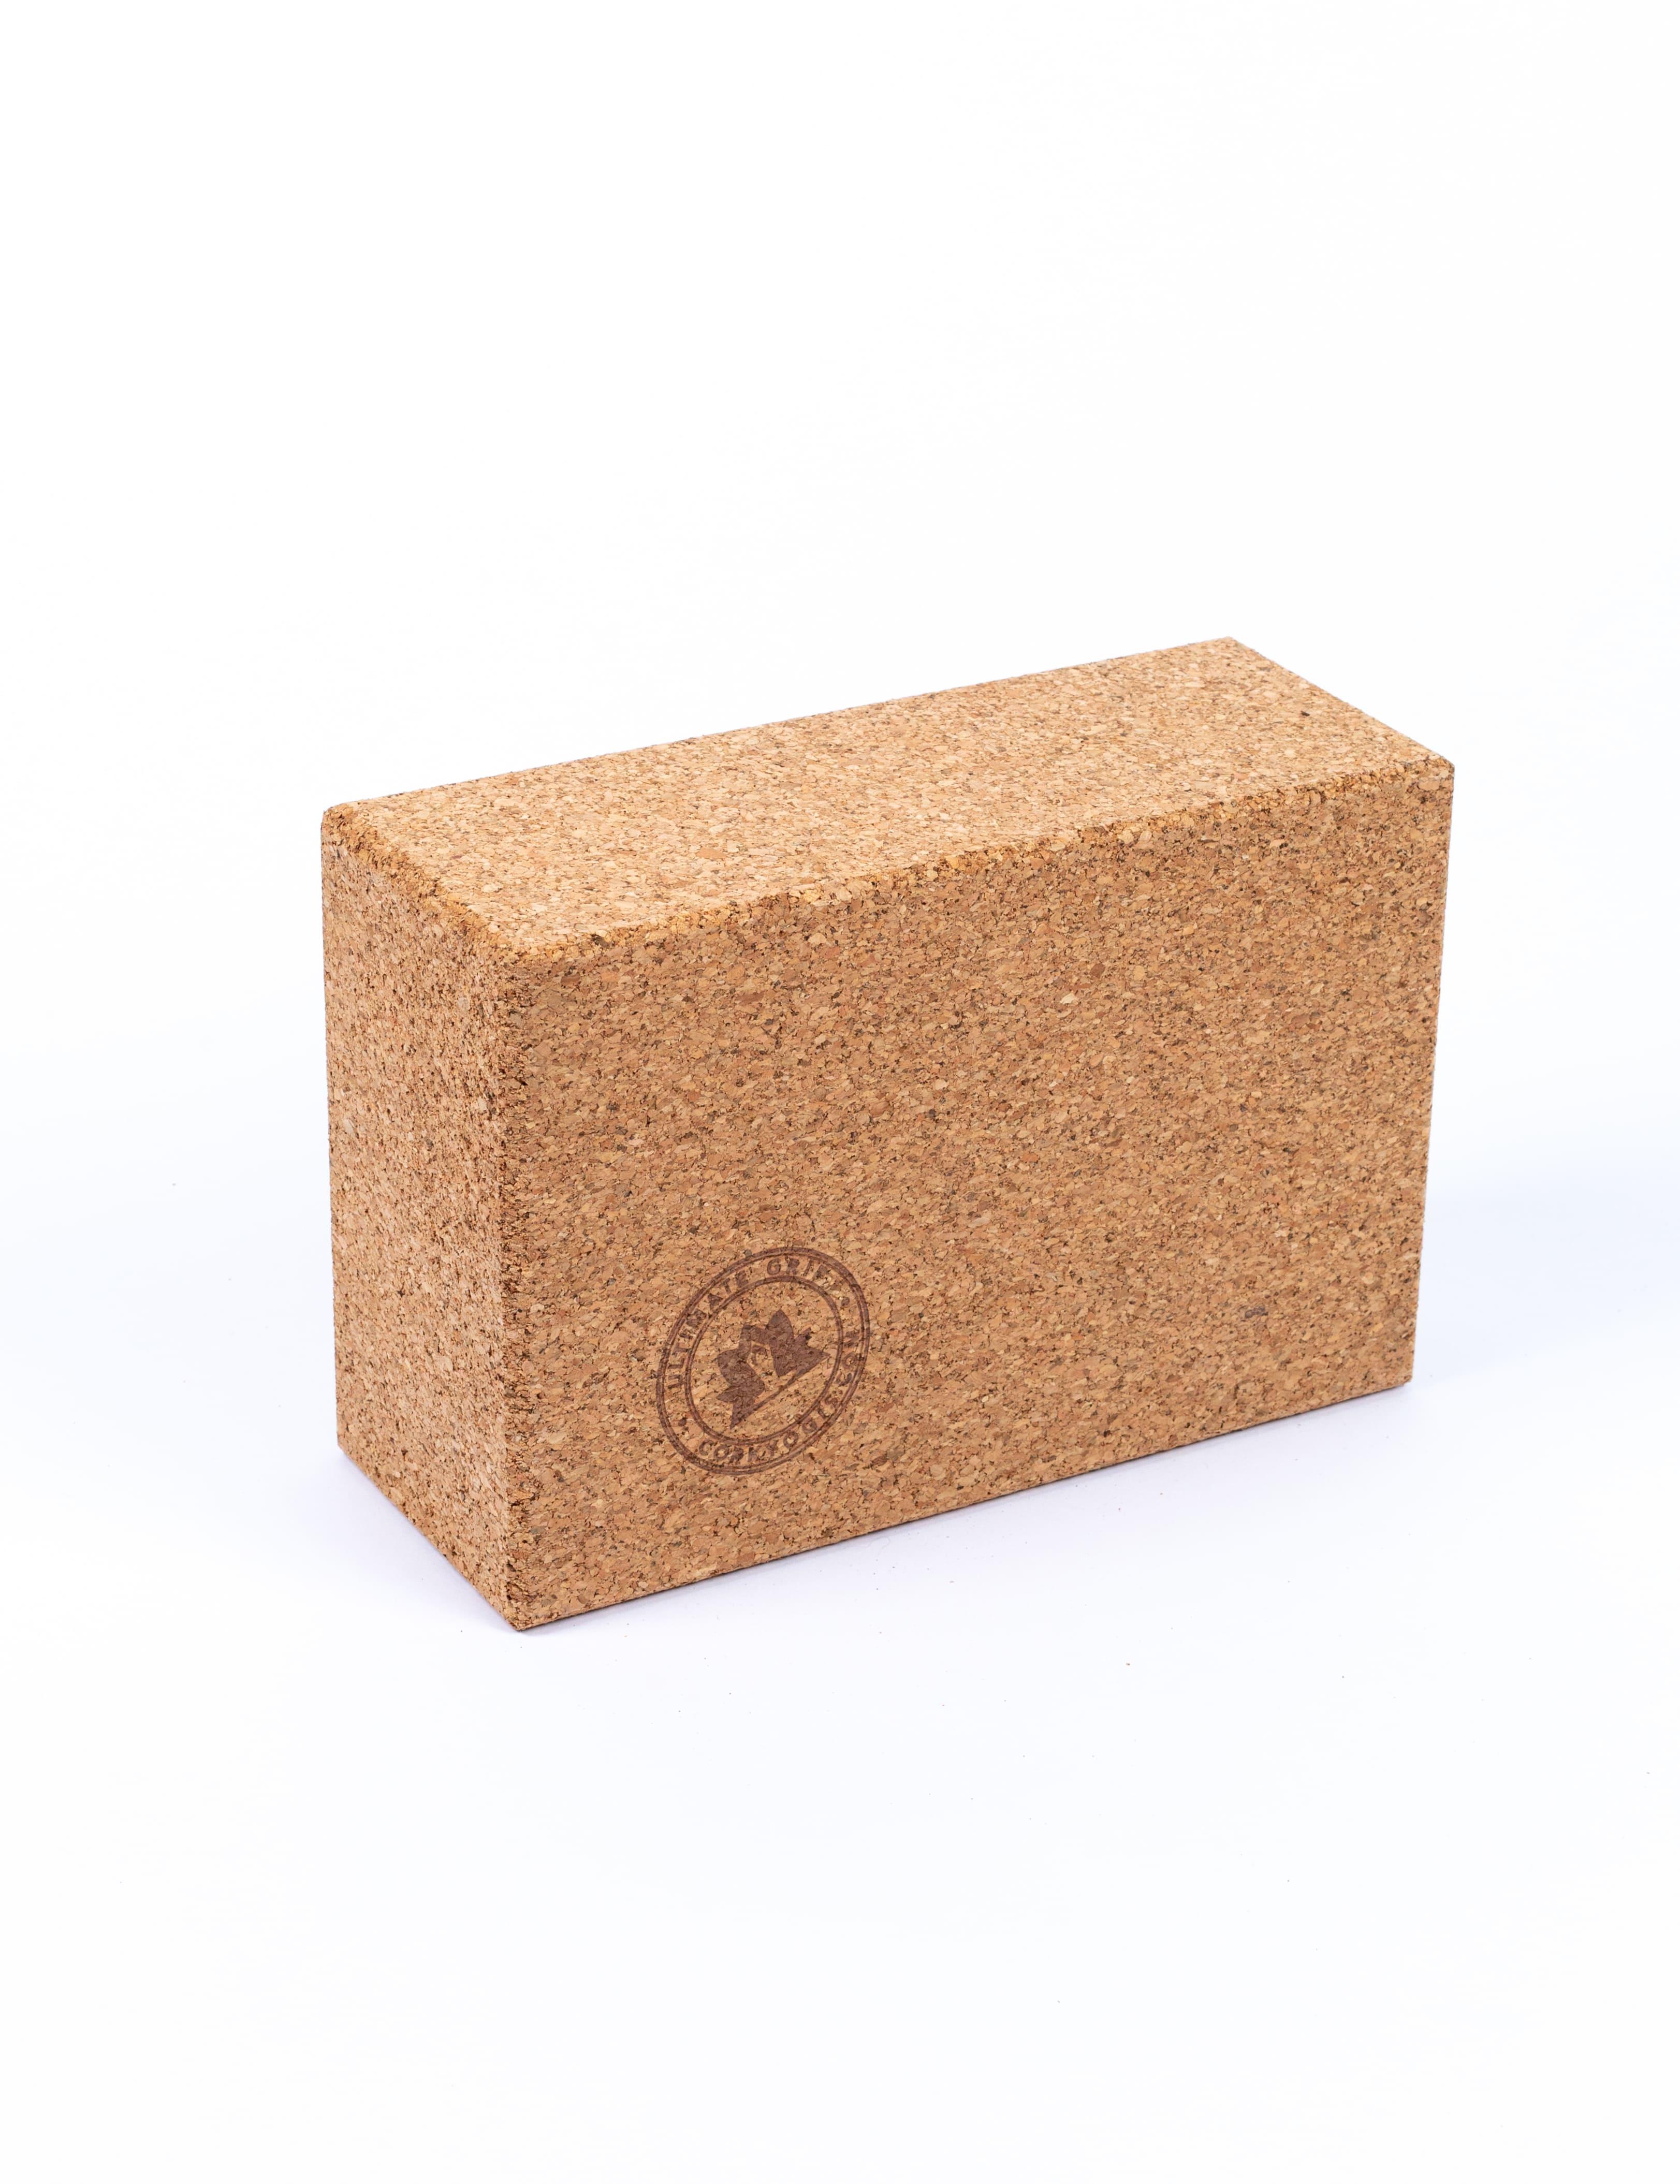 brick block antimicrobial yoga